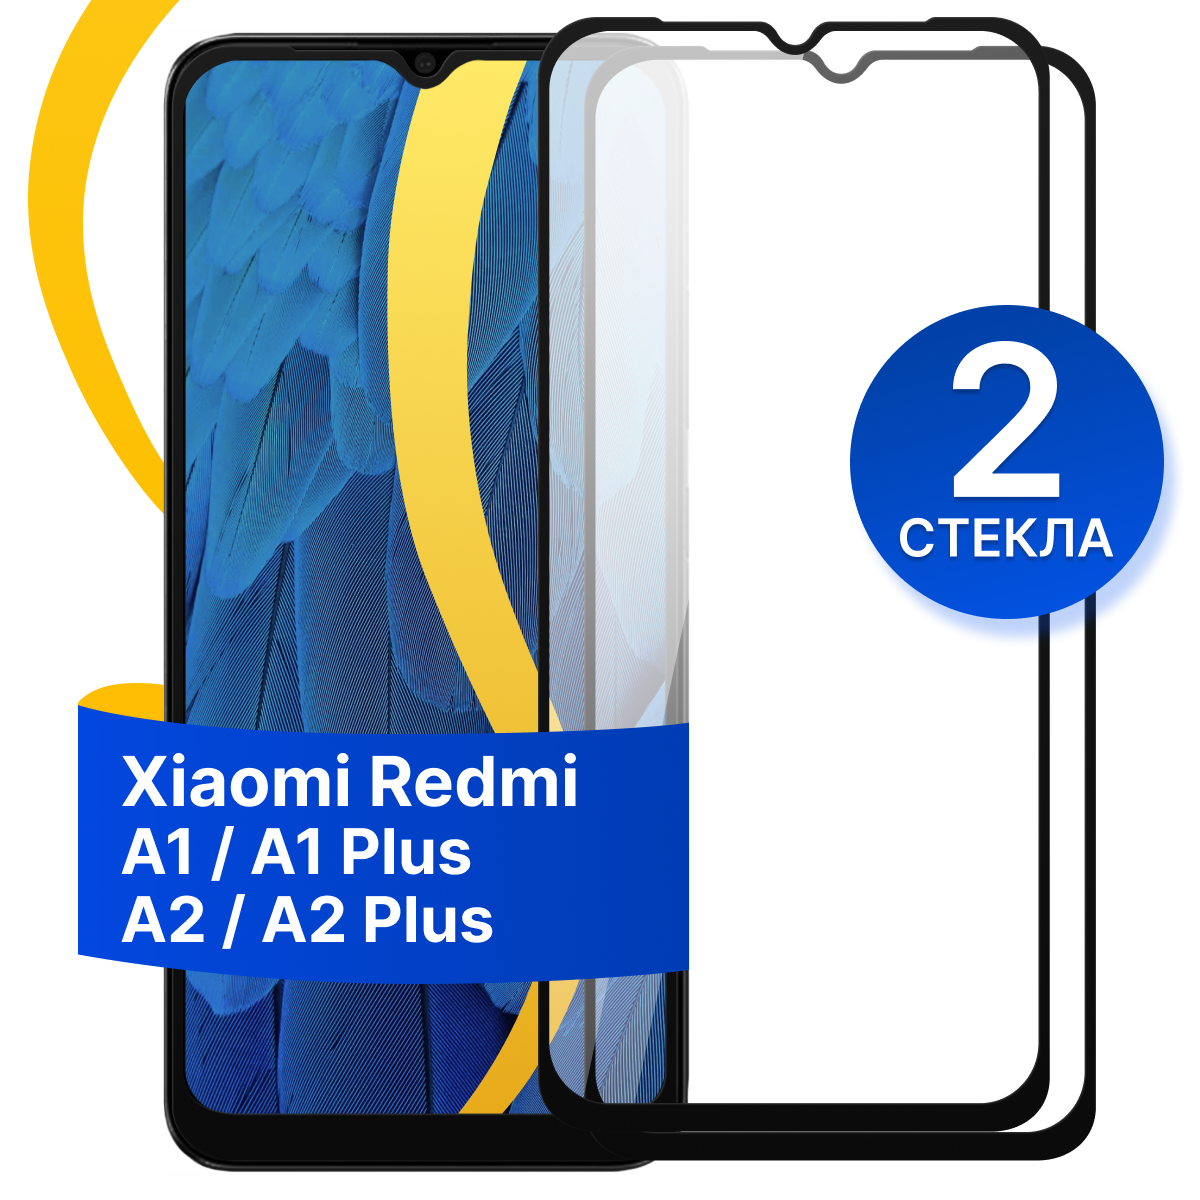 Комплект из 2 шт. Защитное стекло для Xiaomi Redmi A1, A1 Plus и A2, A2 Plus / Противоударное стекло на cмартфон Сяоми Редми А1, А1 Плюс и А2, А2 Плюс